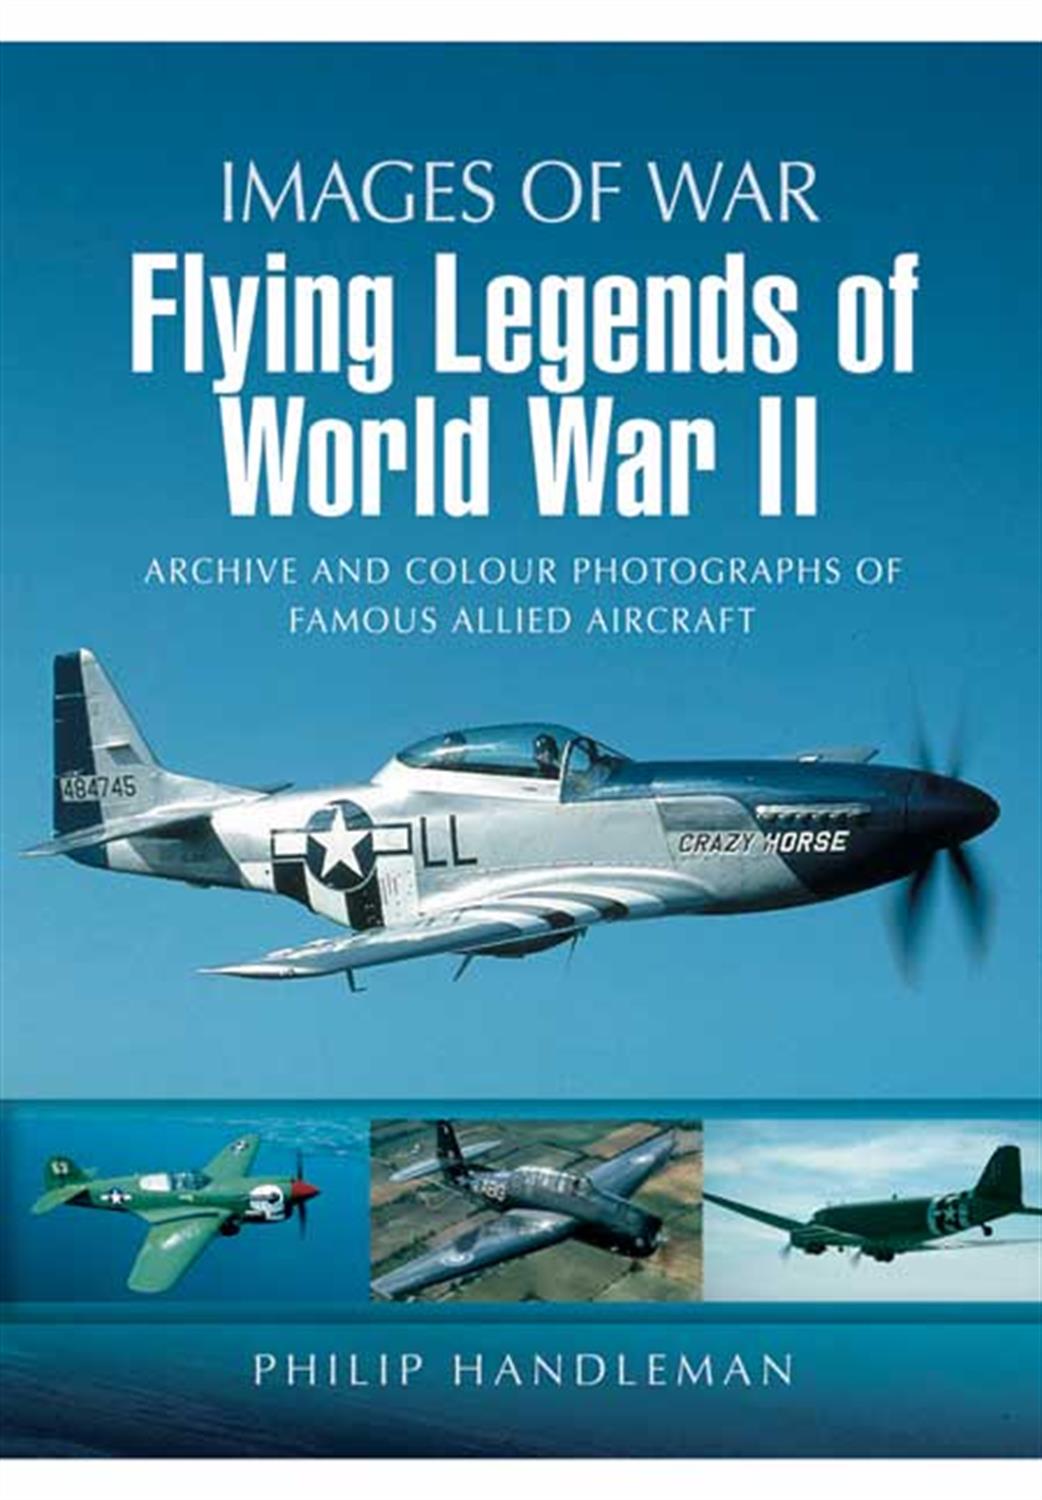 Pen & Sword  9781848843080 Images of War Book Flying Legends of World War II by Philip Handleman